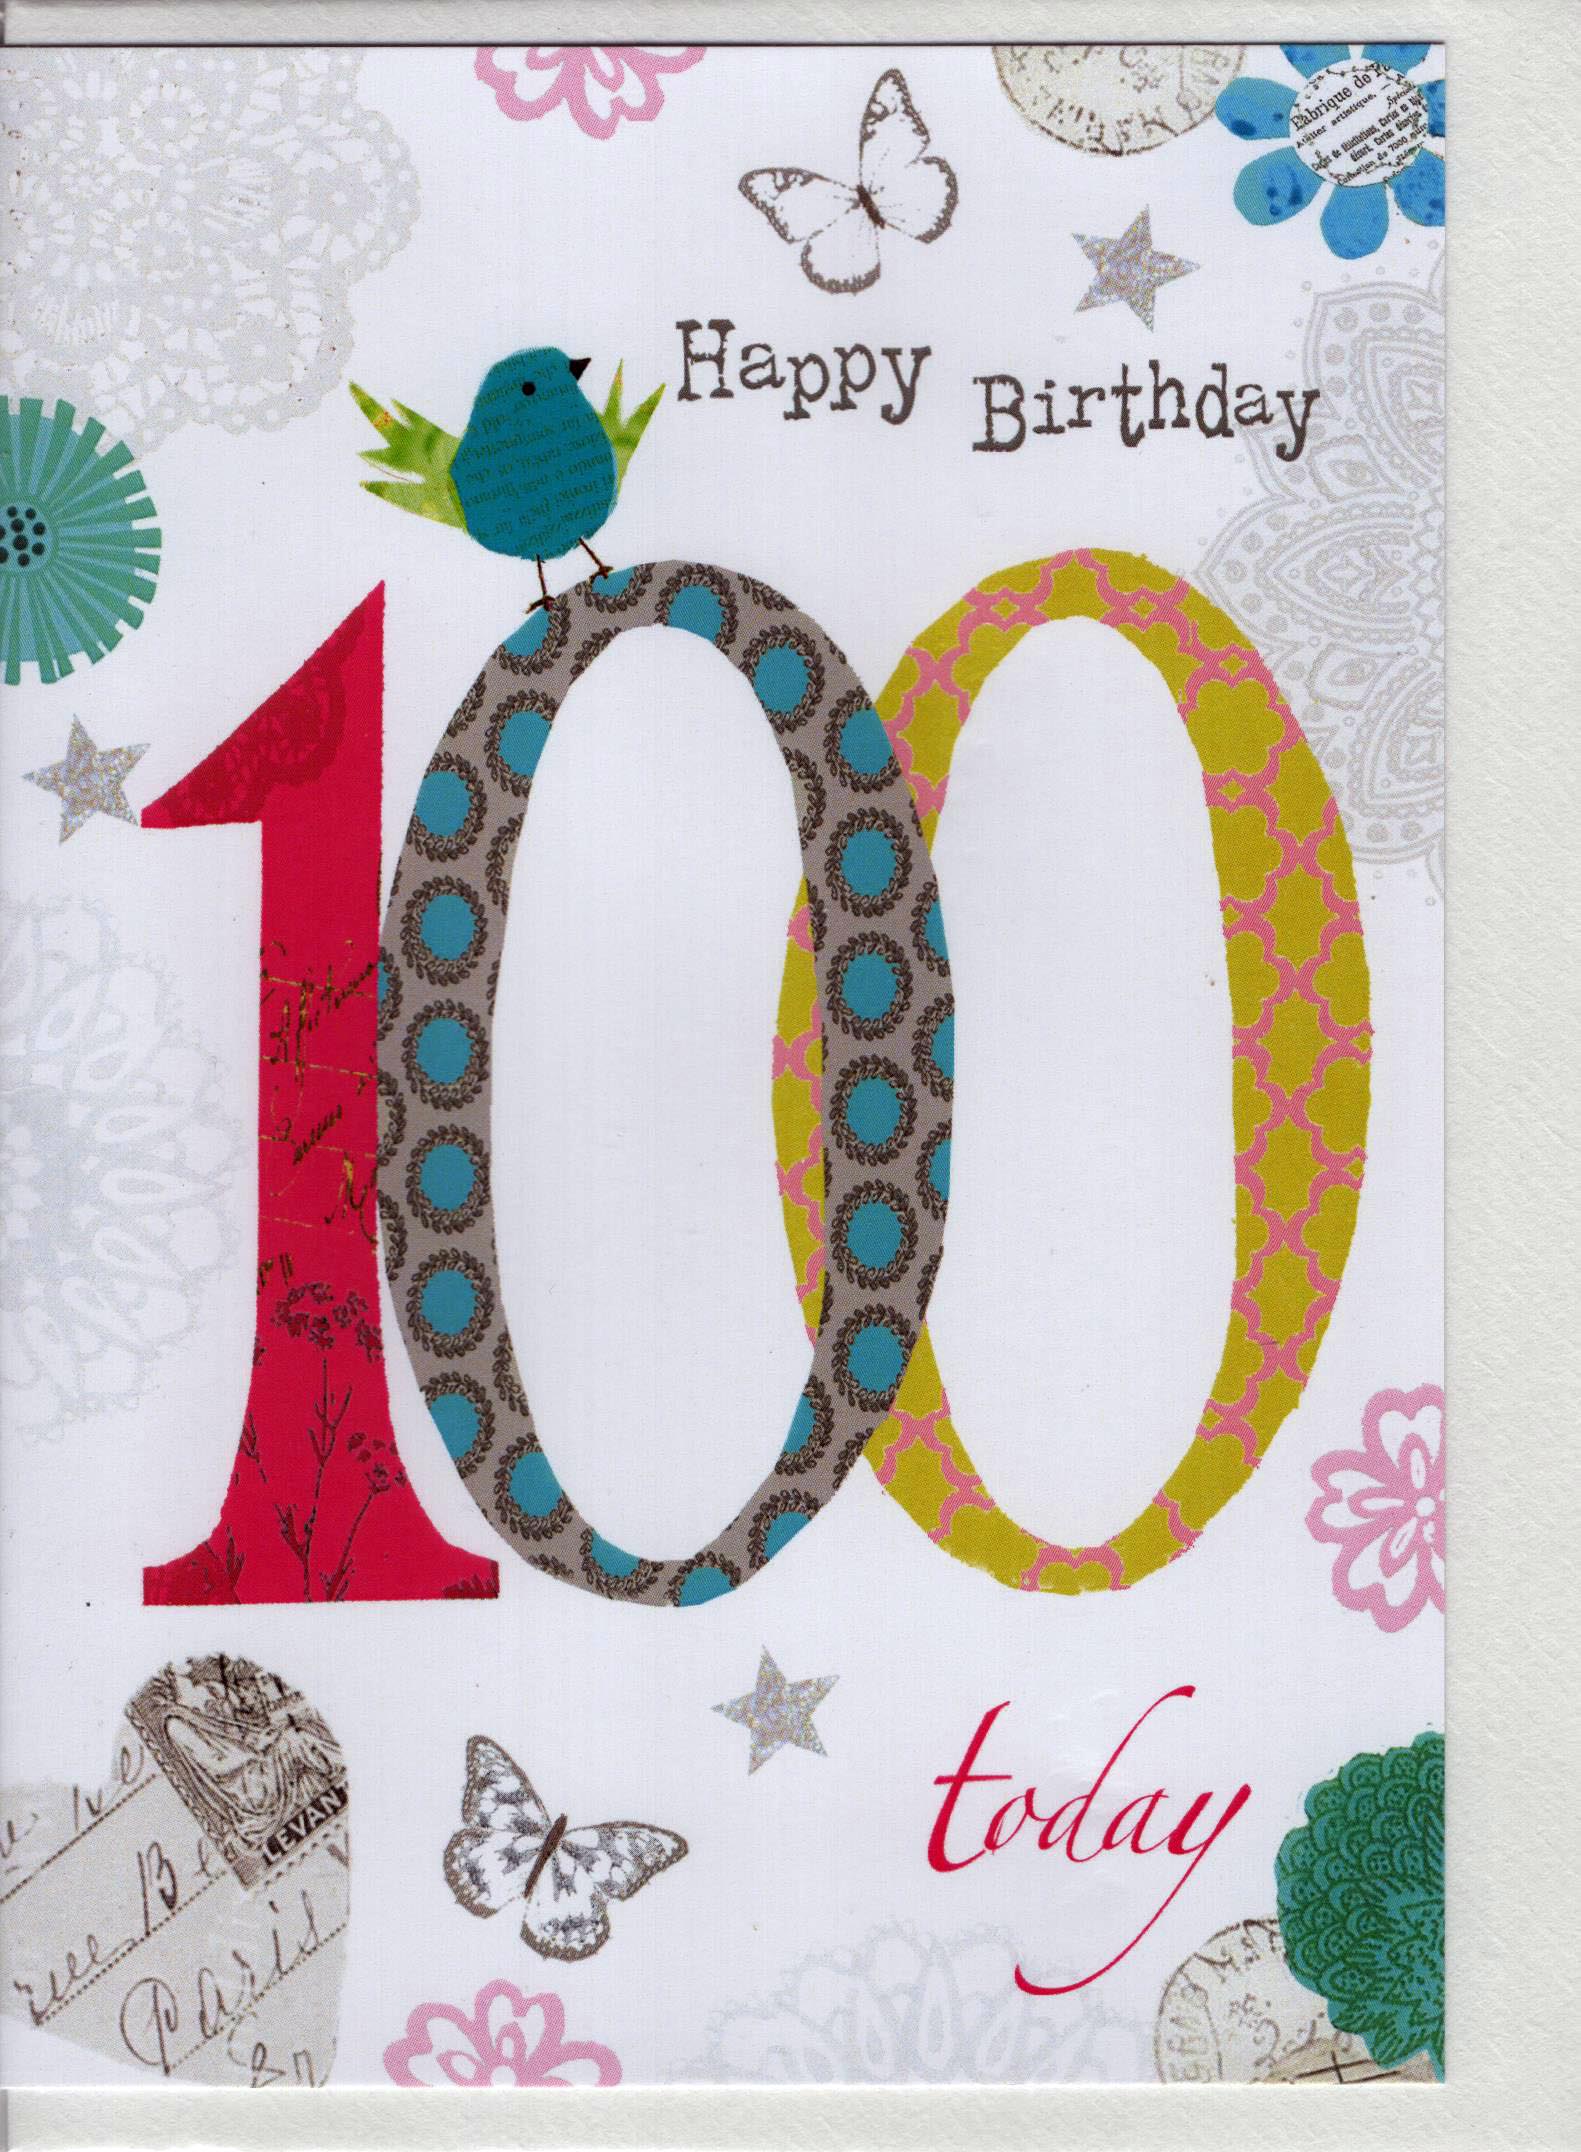 Happy Birthday 100 today